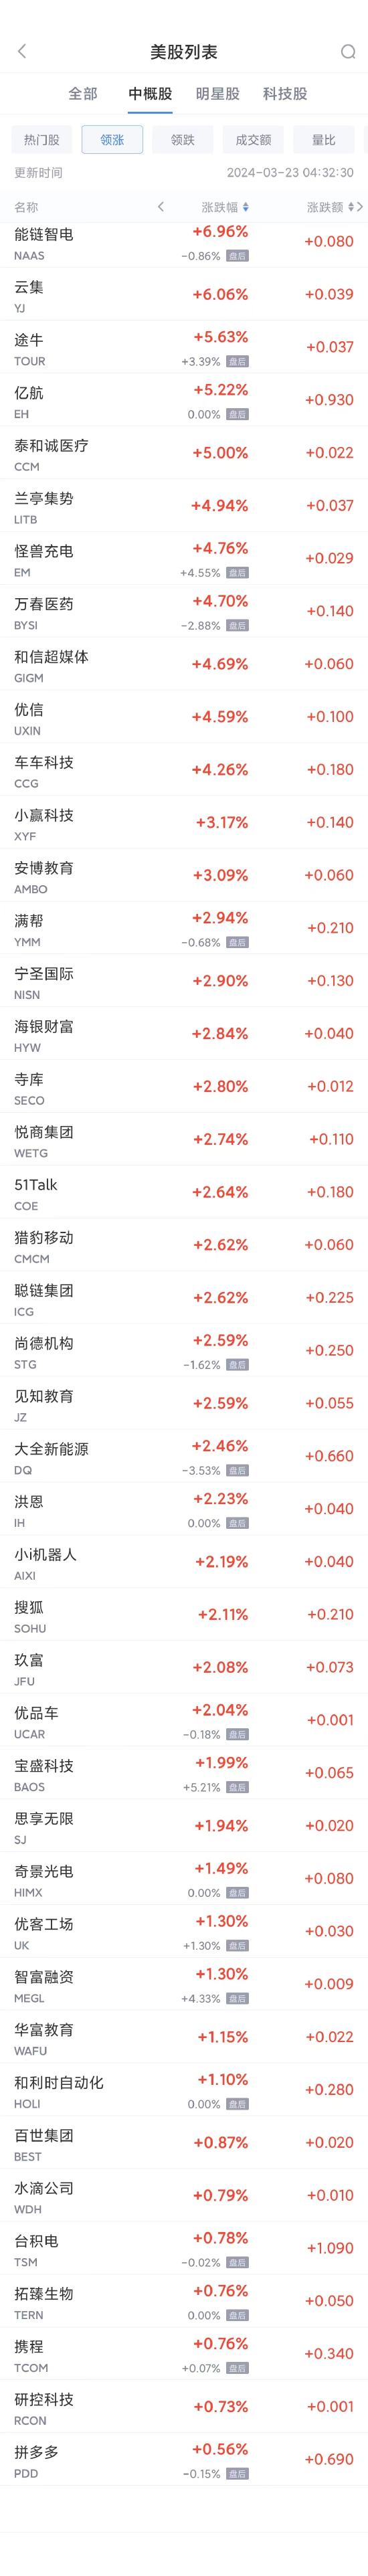 热门中概股周五多数下跌 小鹏汽车跌7.8%，唯品会跌6%